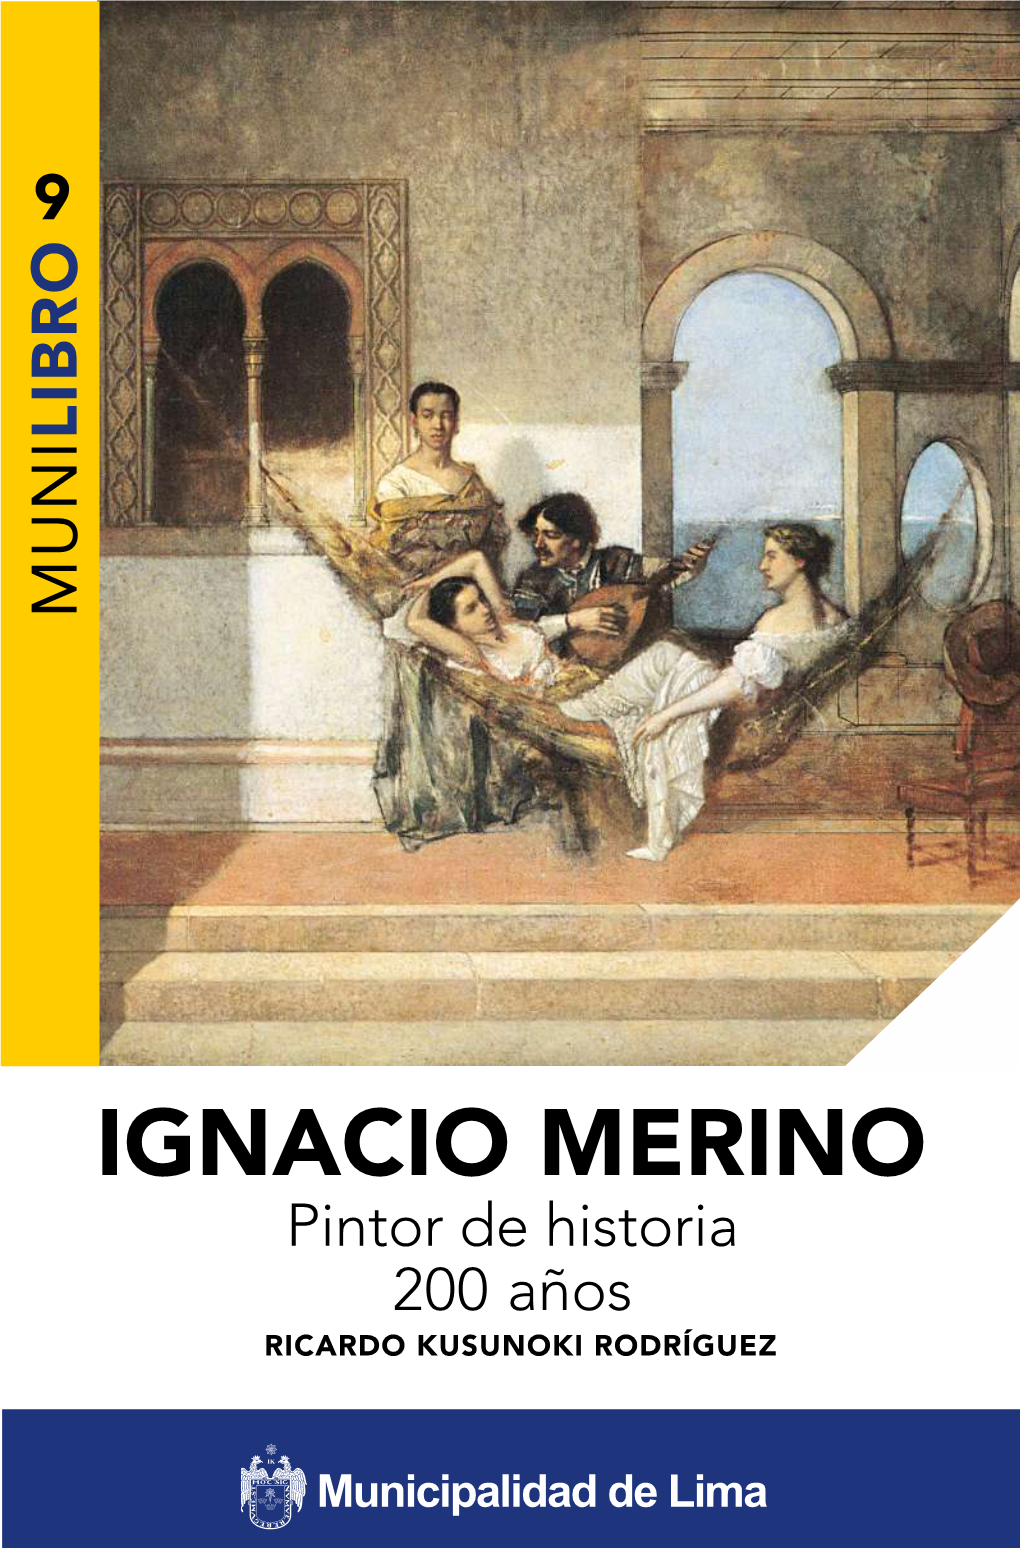 Ignacio Merino